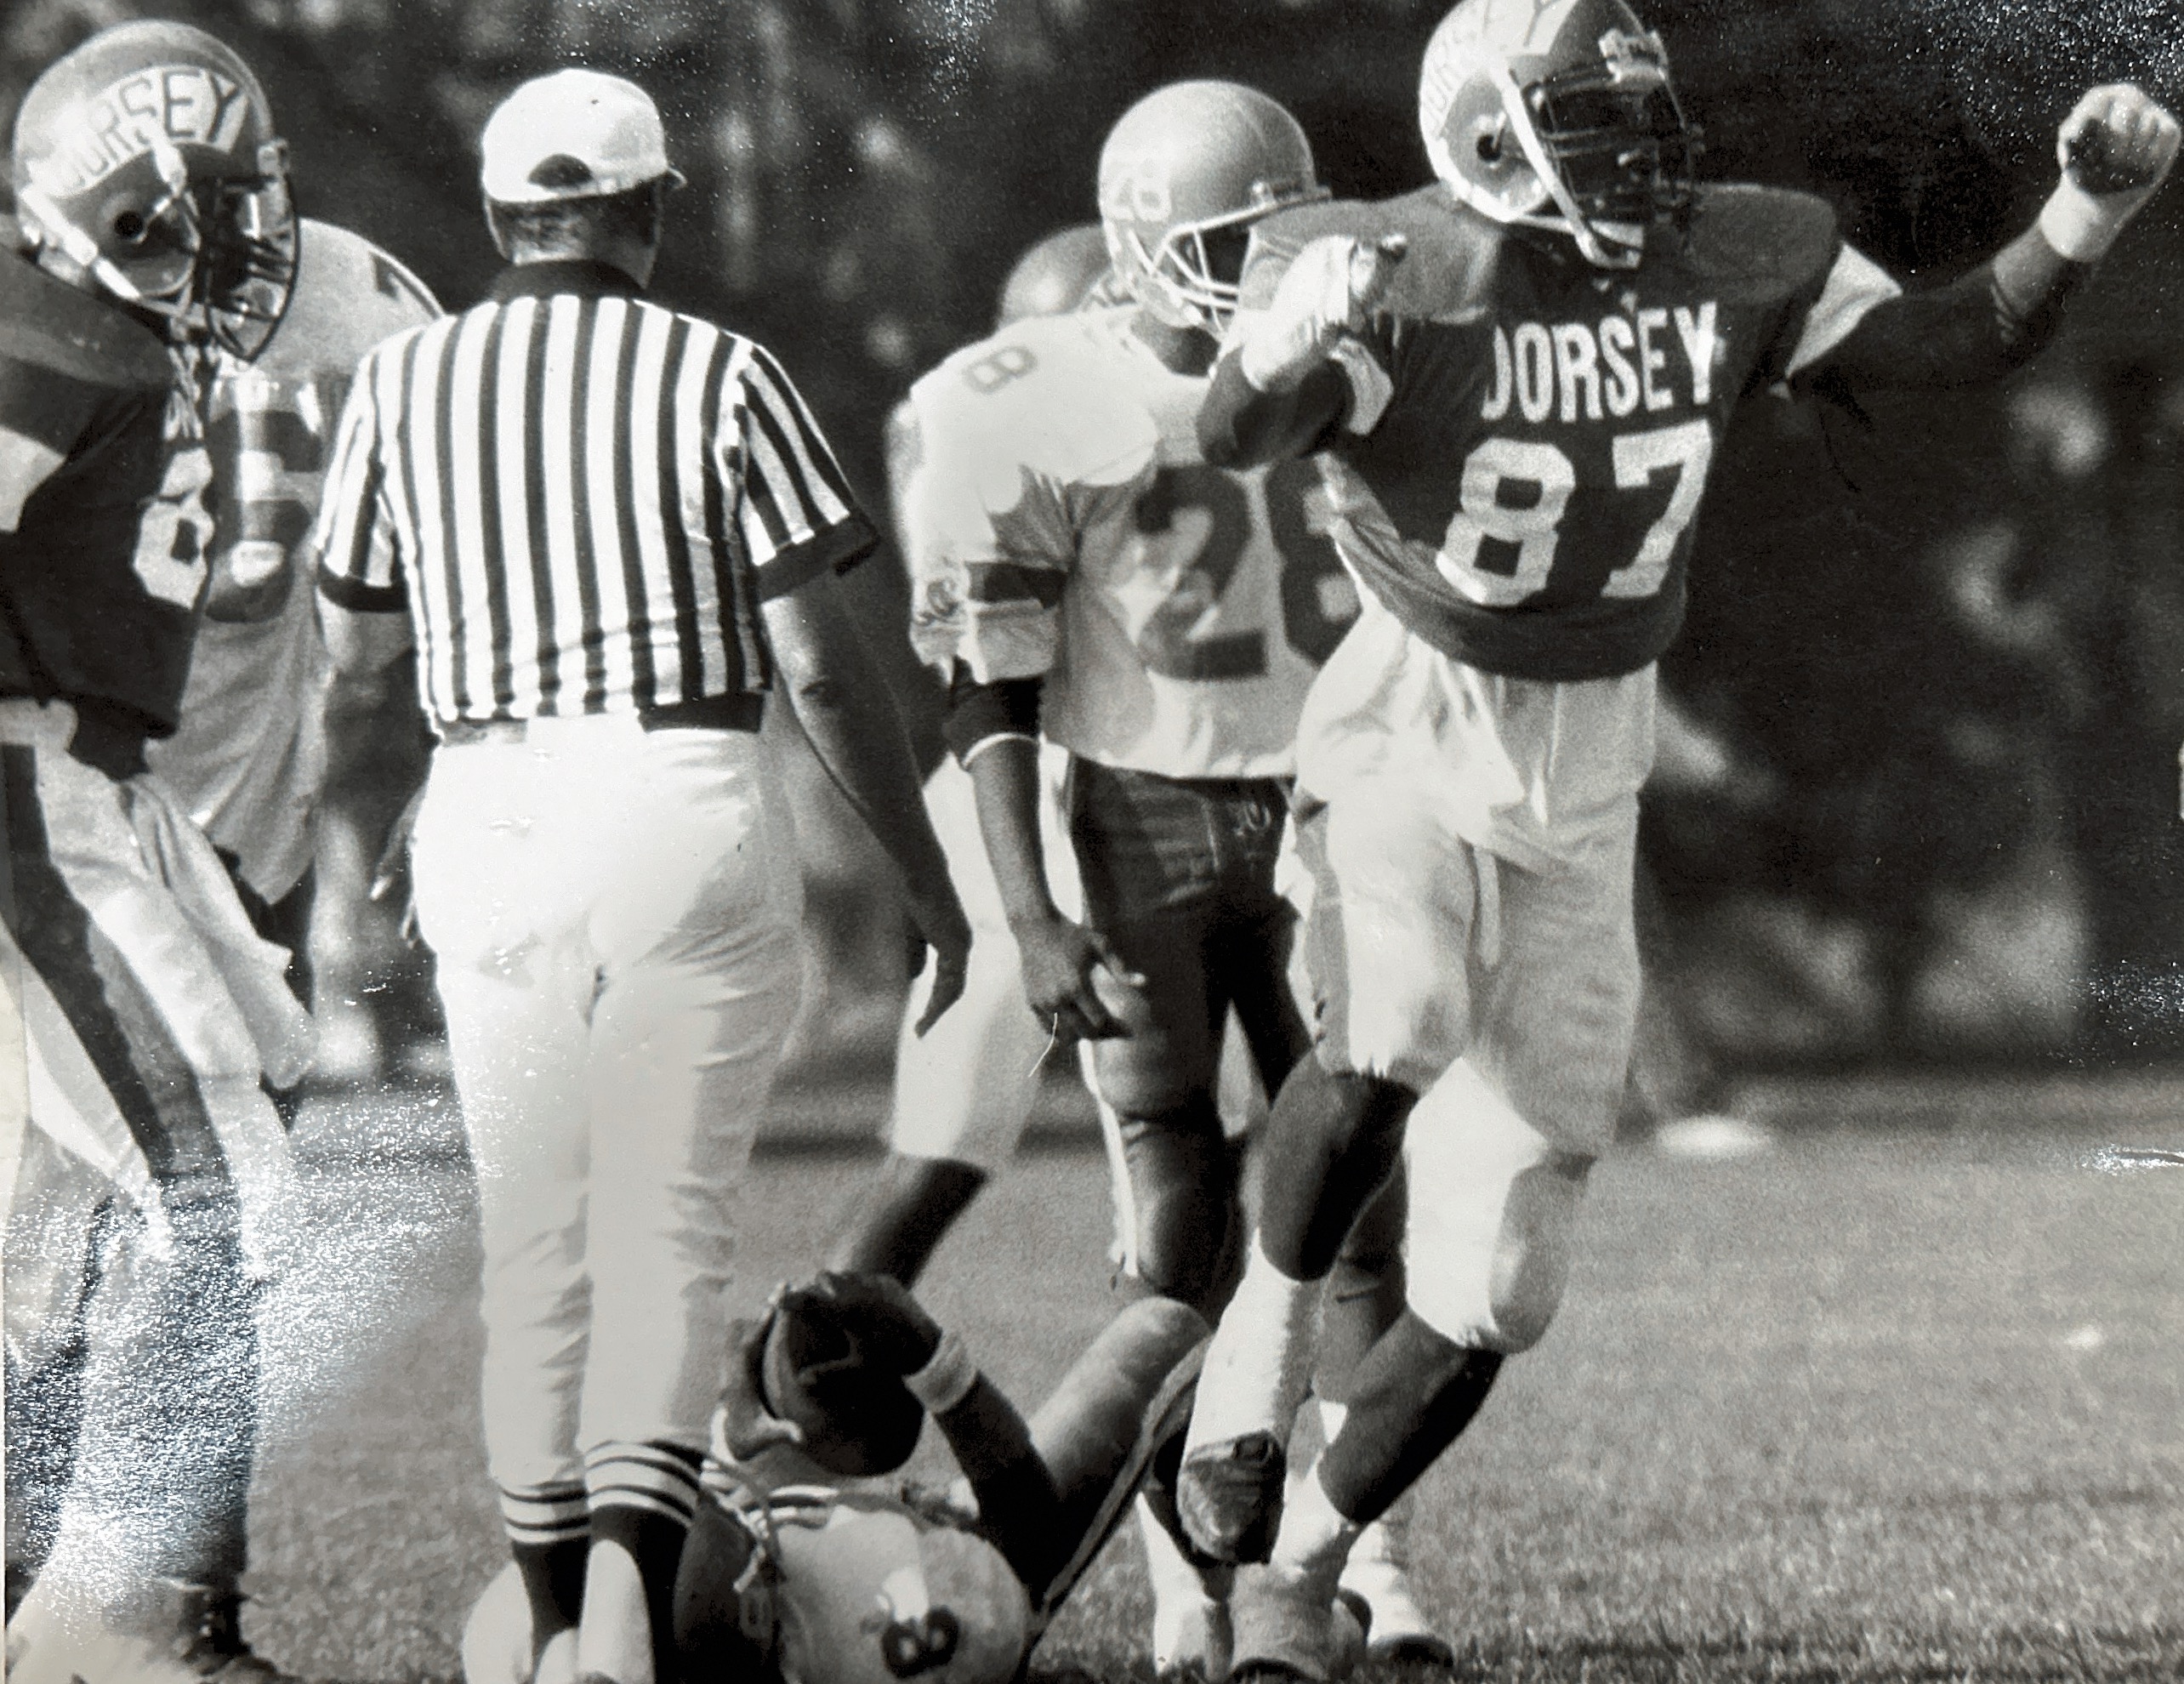 Dorsey High School vs. Crenshaw High School 1991